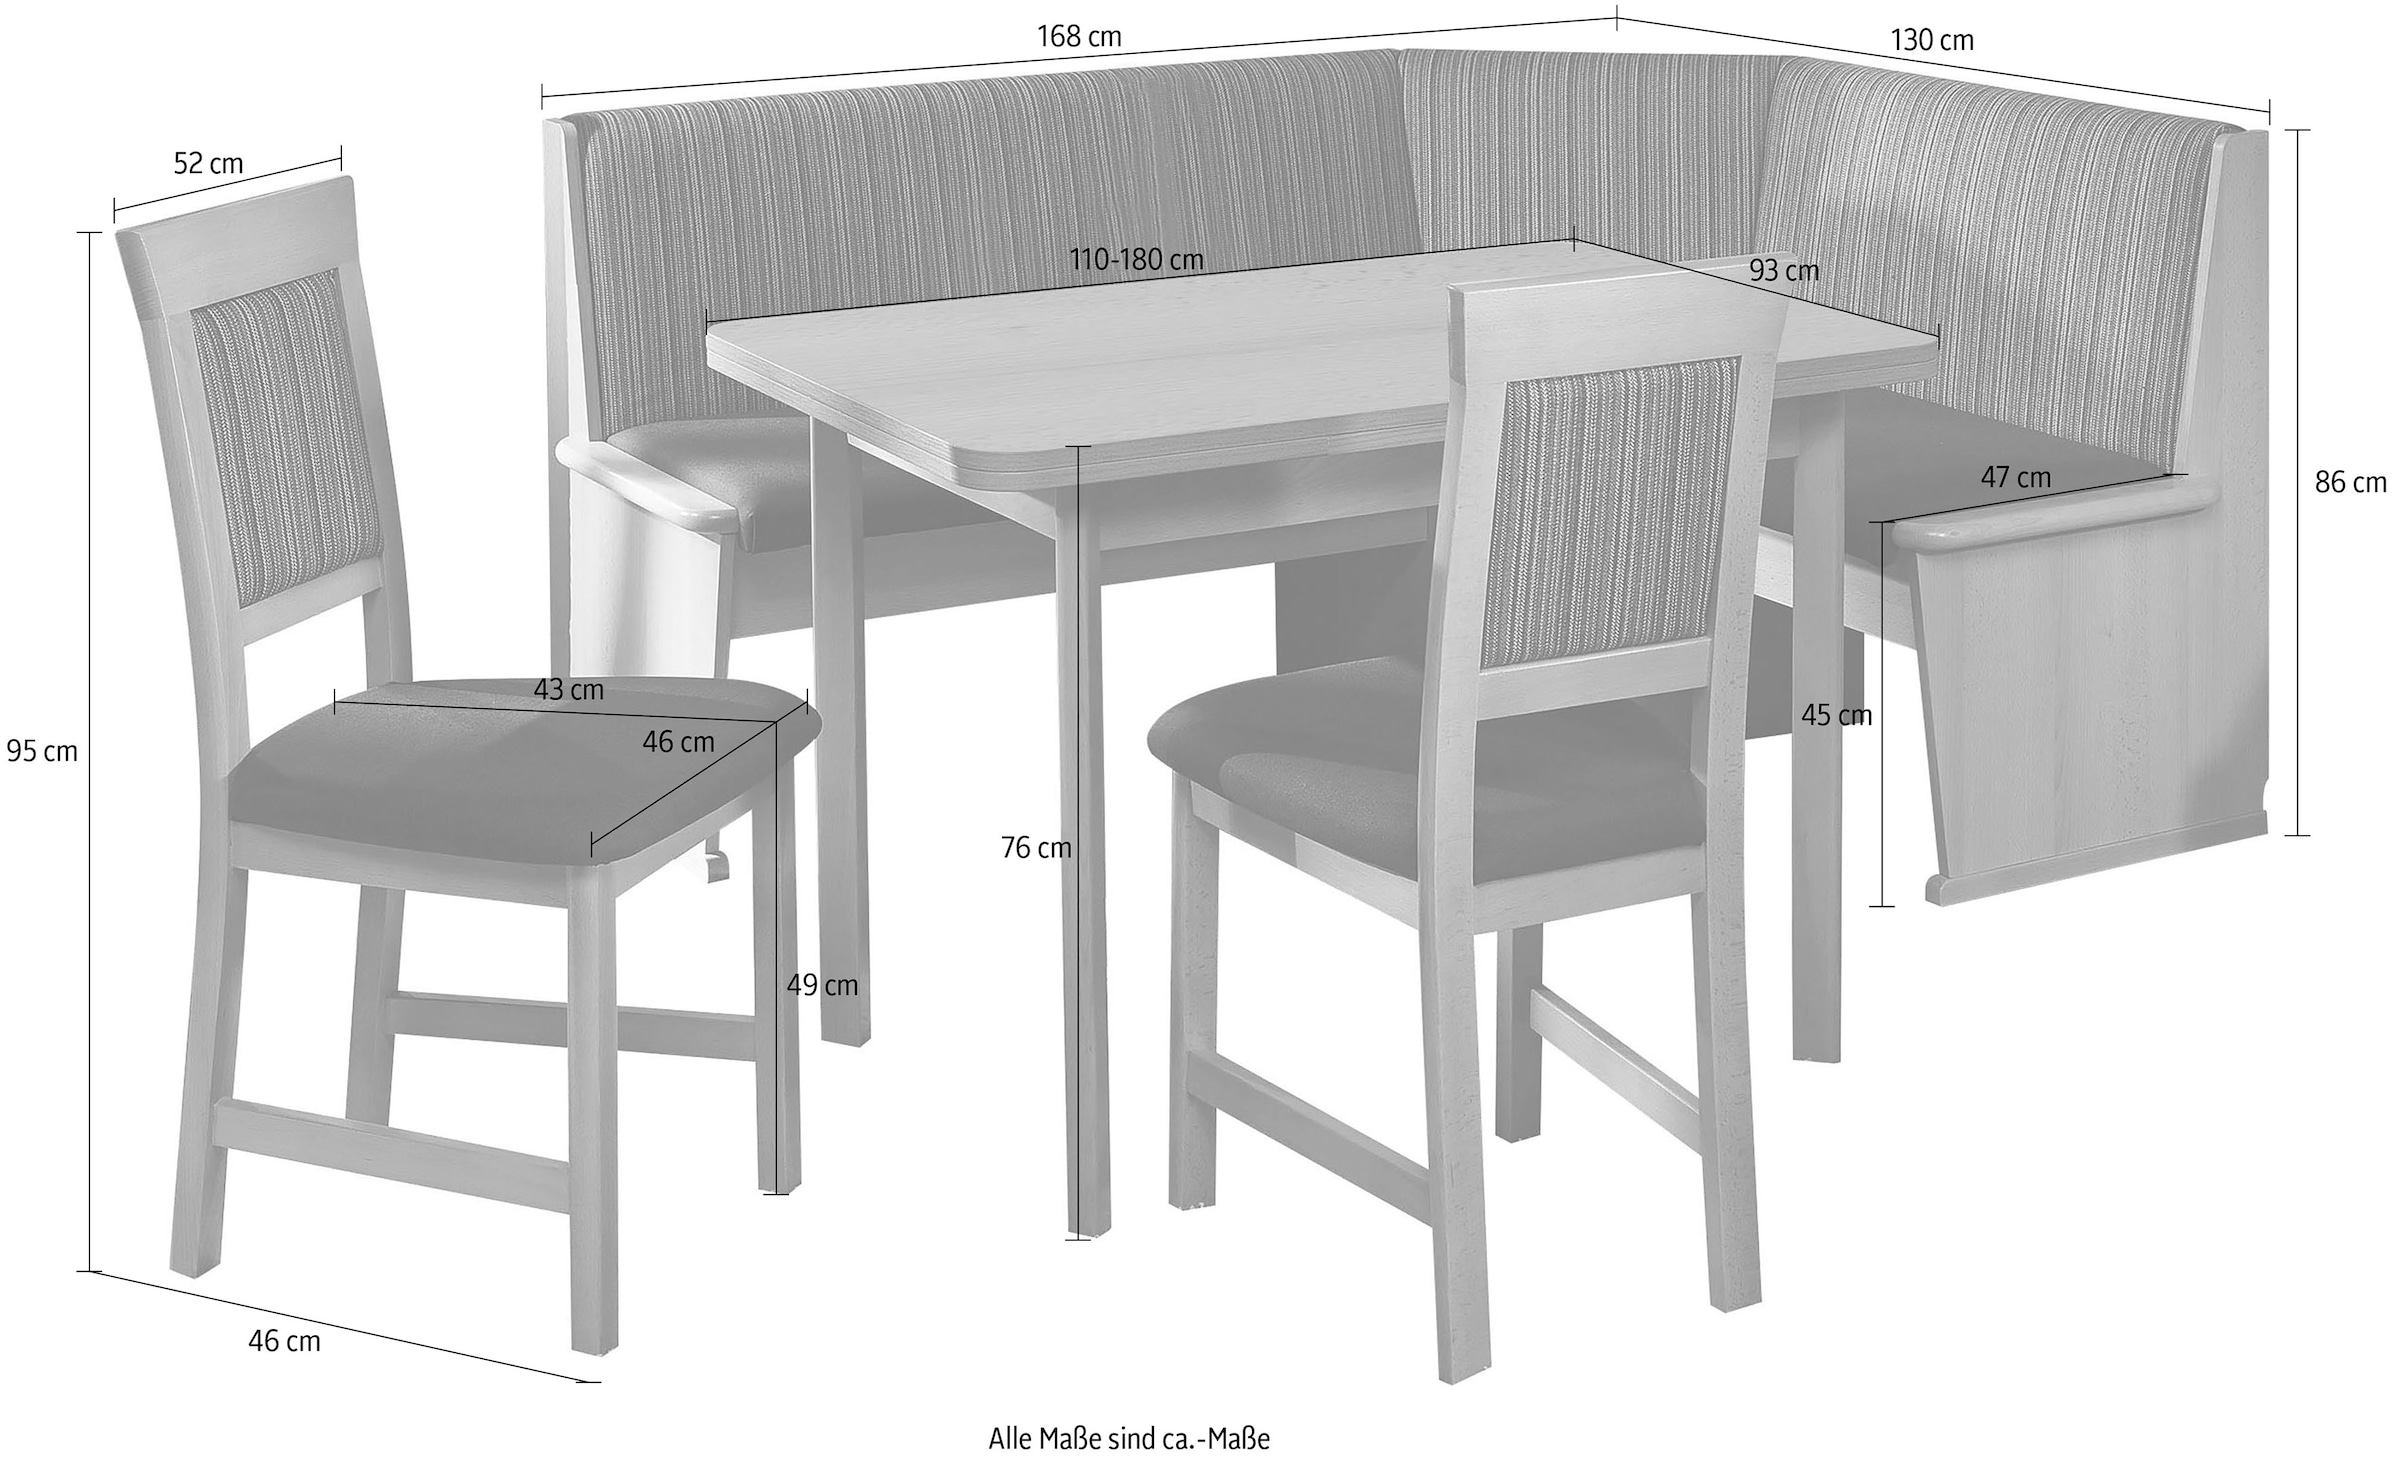 SCHÖSSWENDER Eckbankgruppe »Imola«, (Set, 4), links BAUR umstellbar, Auszug kaufen Stühle massiv | 110(180)cm, und rechts Eckbank